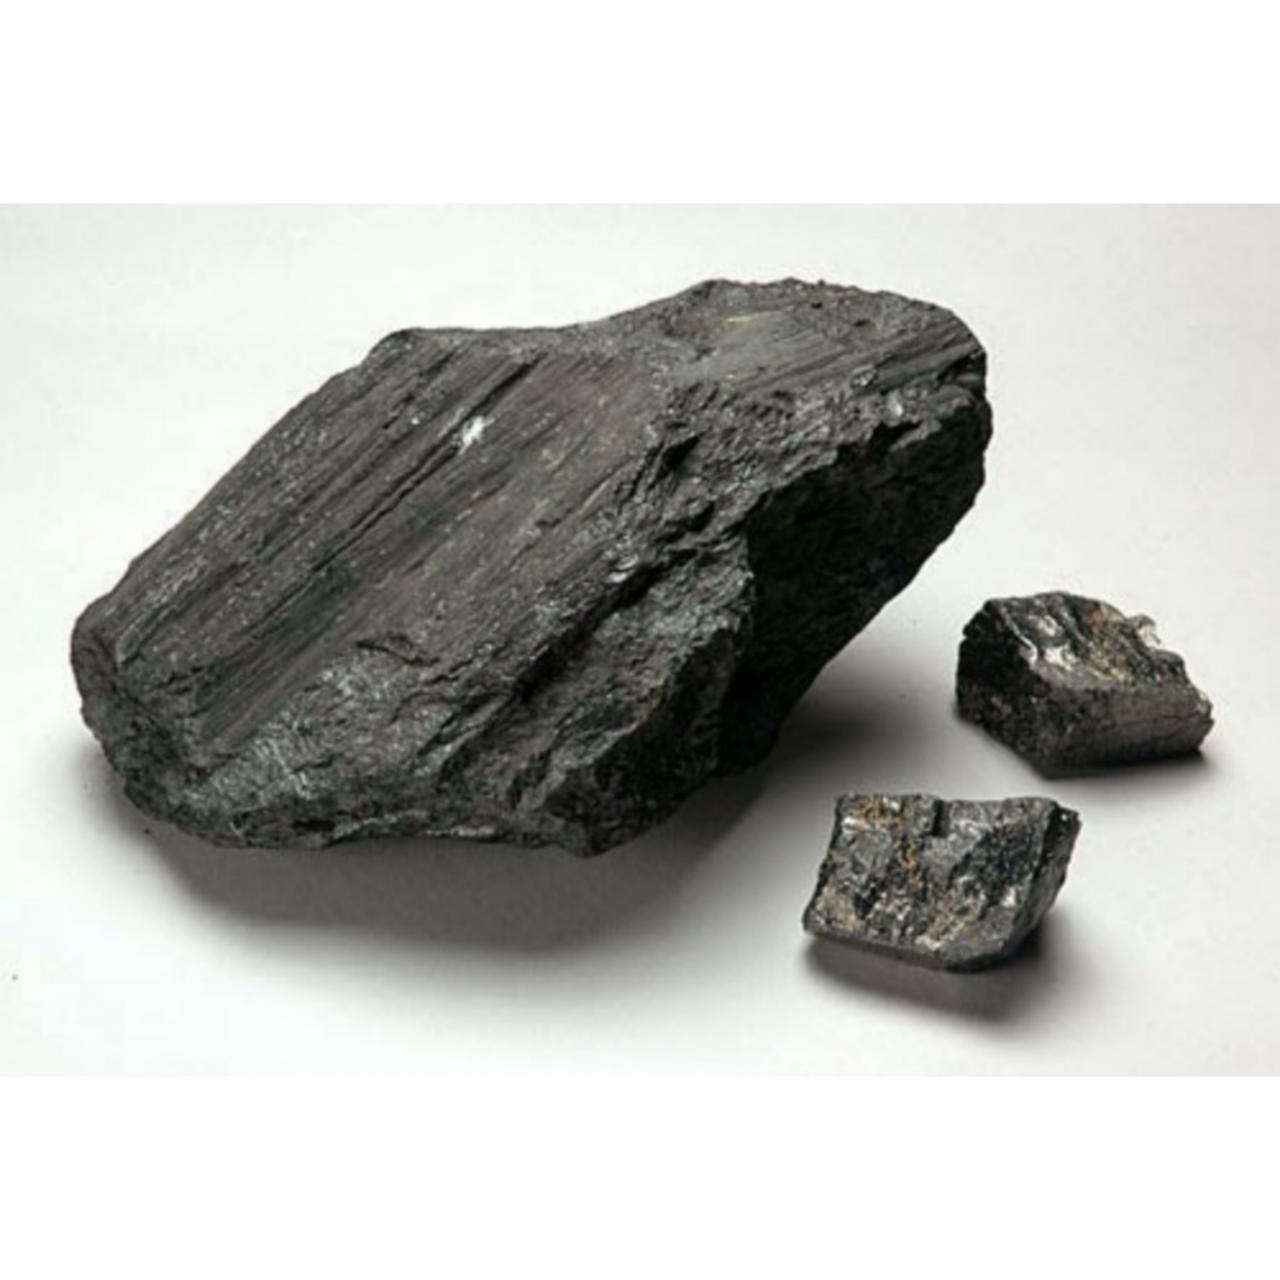 Уголь рисунок полезное ископаемое. Каменный уголь полезное ископаемое. Каменный уголь антрацит. Уголь бурый каменный антрацит. Уголь битуминозный антрацит каменный.